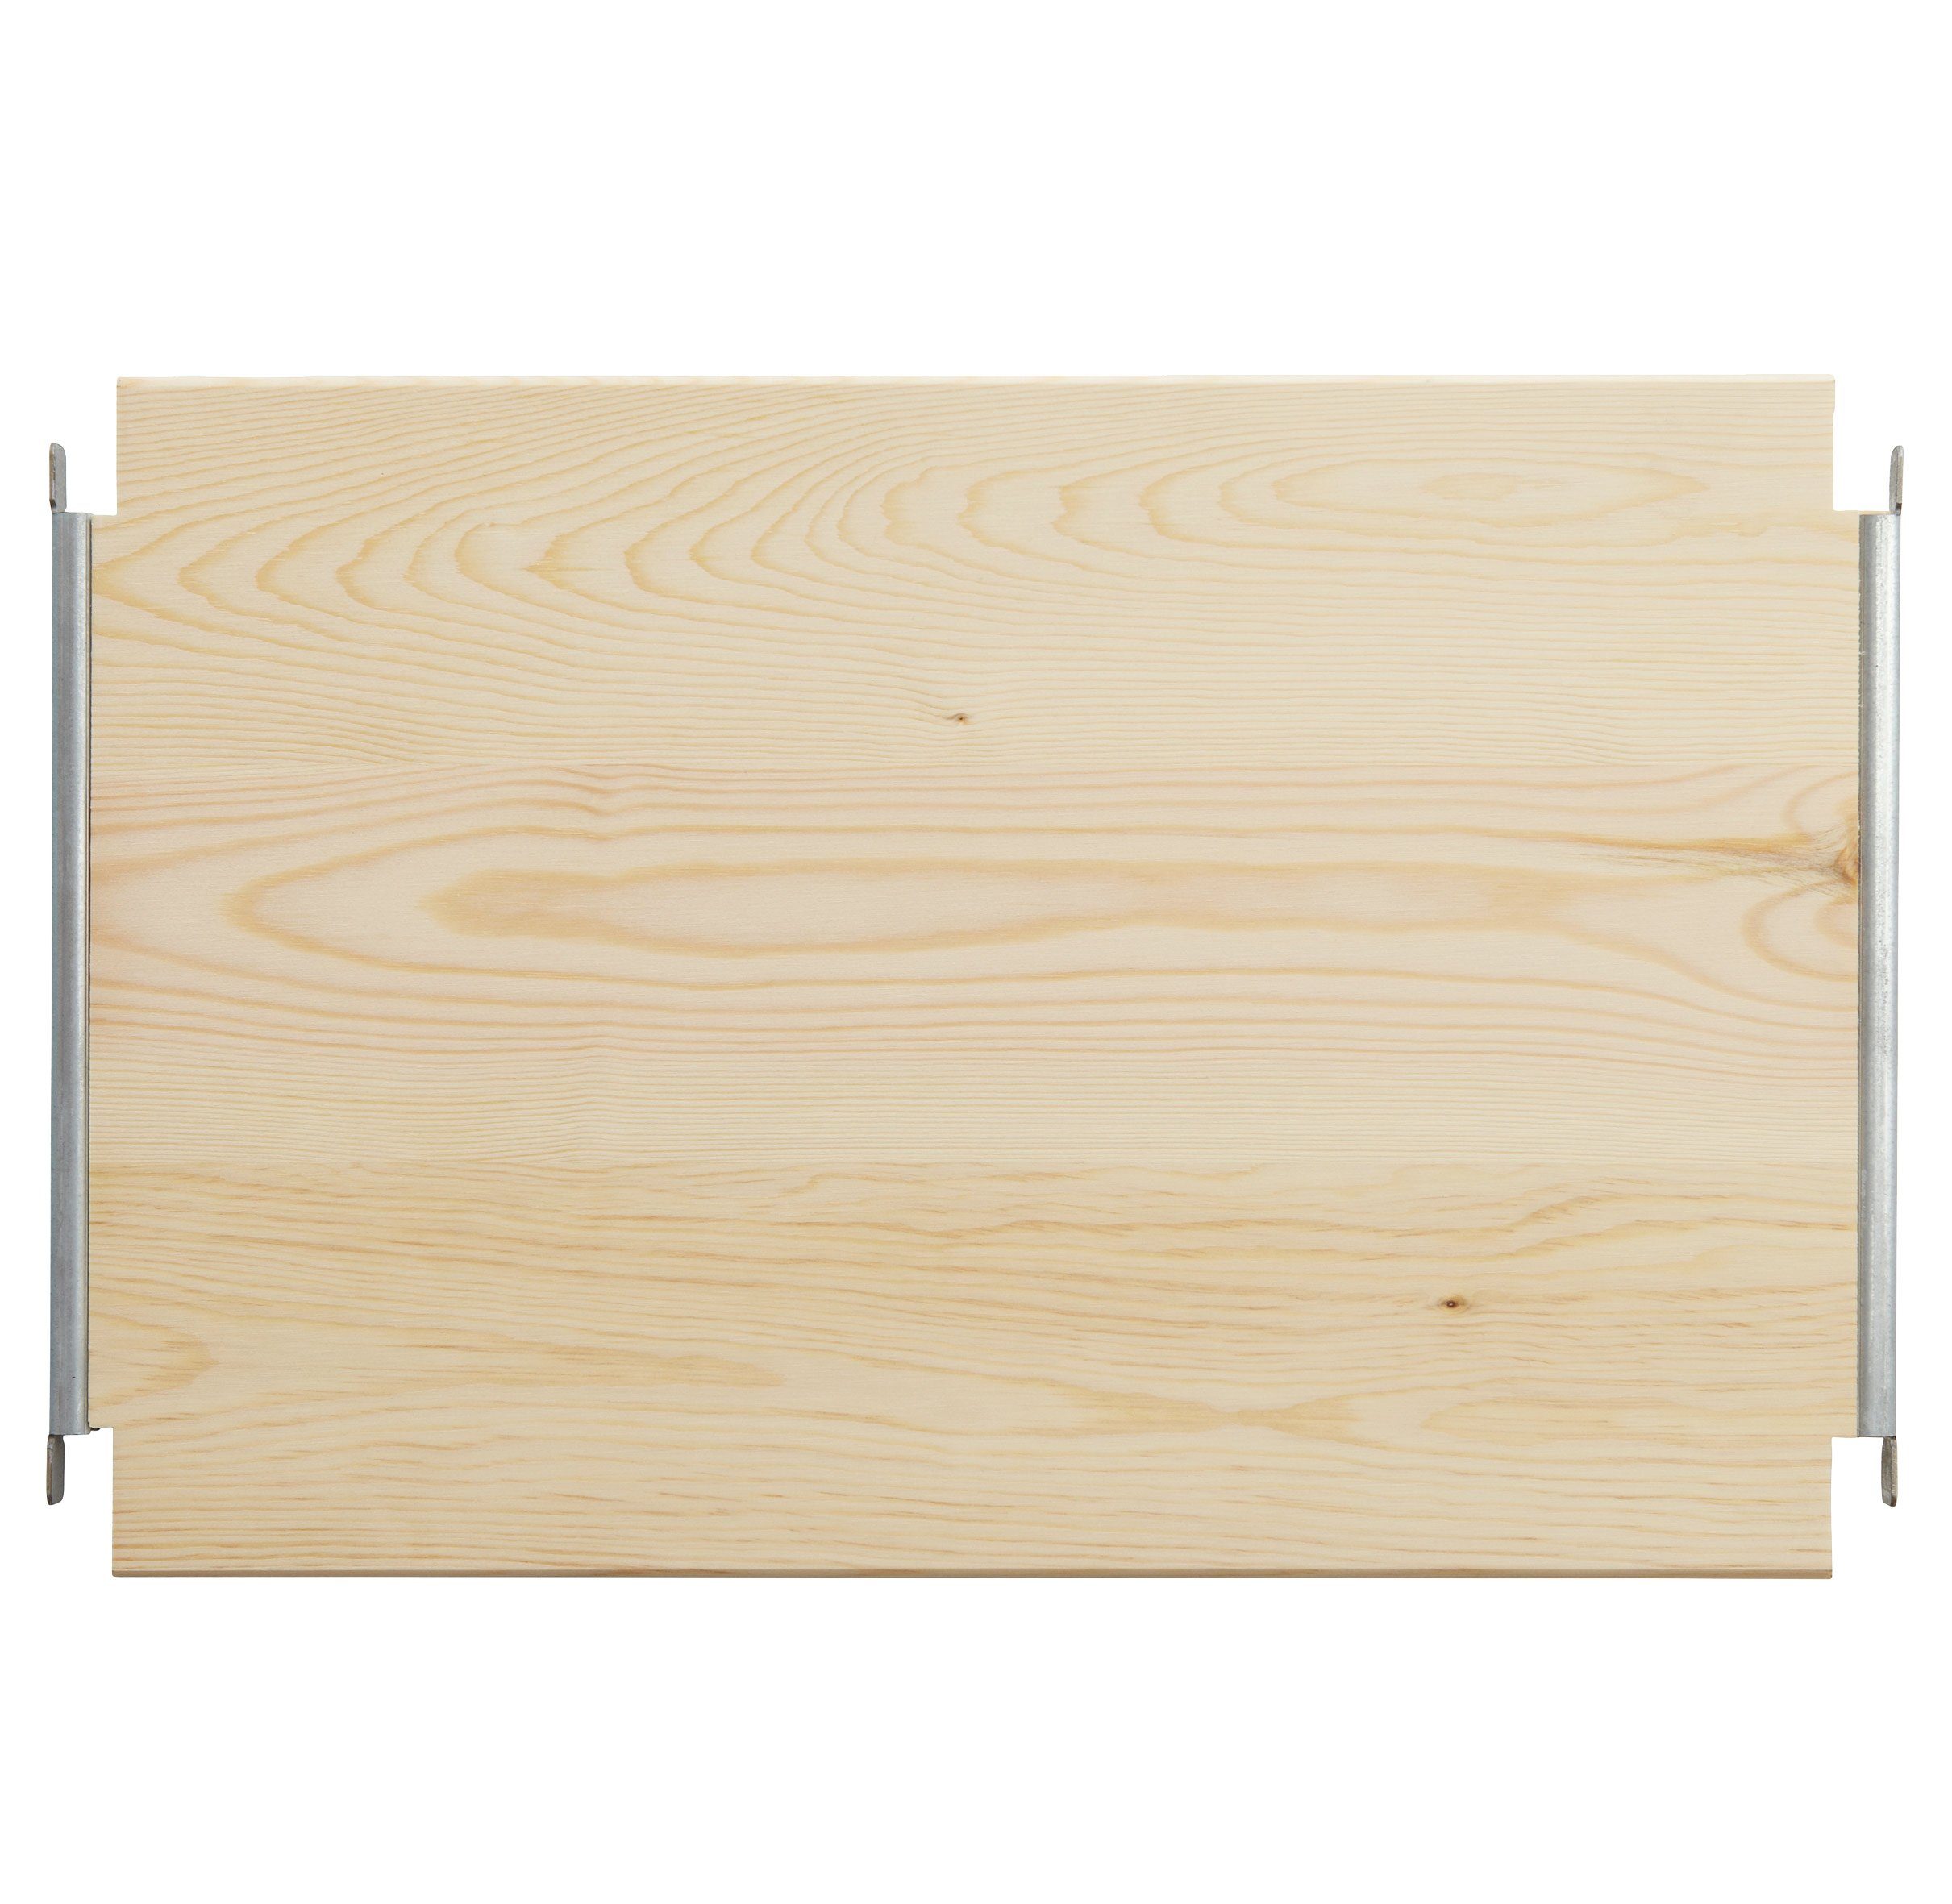 Einlegeboden Regalboden LASSE, B 39 x T 40 cm, Kieferholz massiv, für Regalsysteme | Einlegeböden